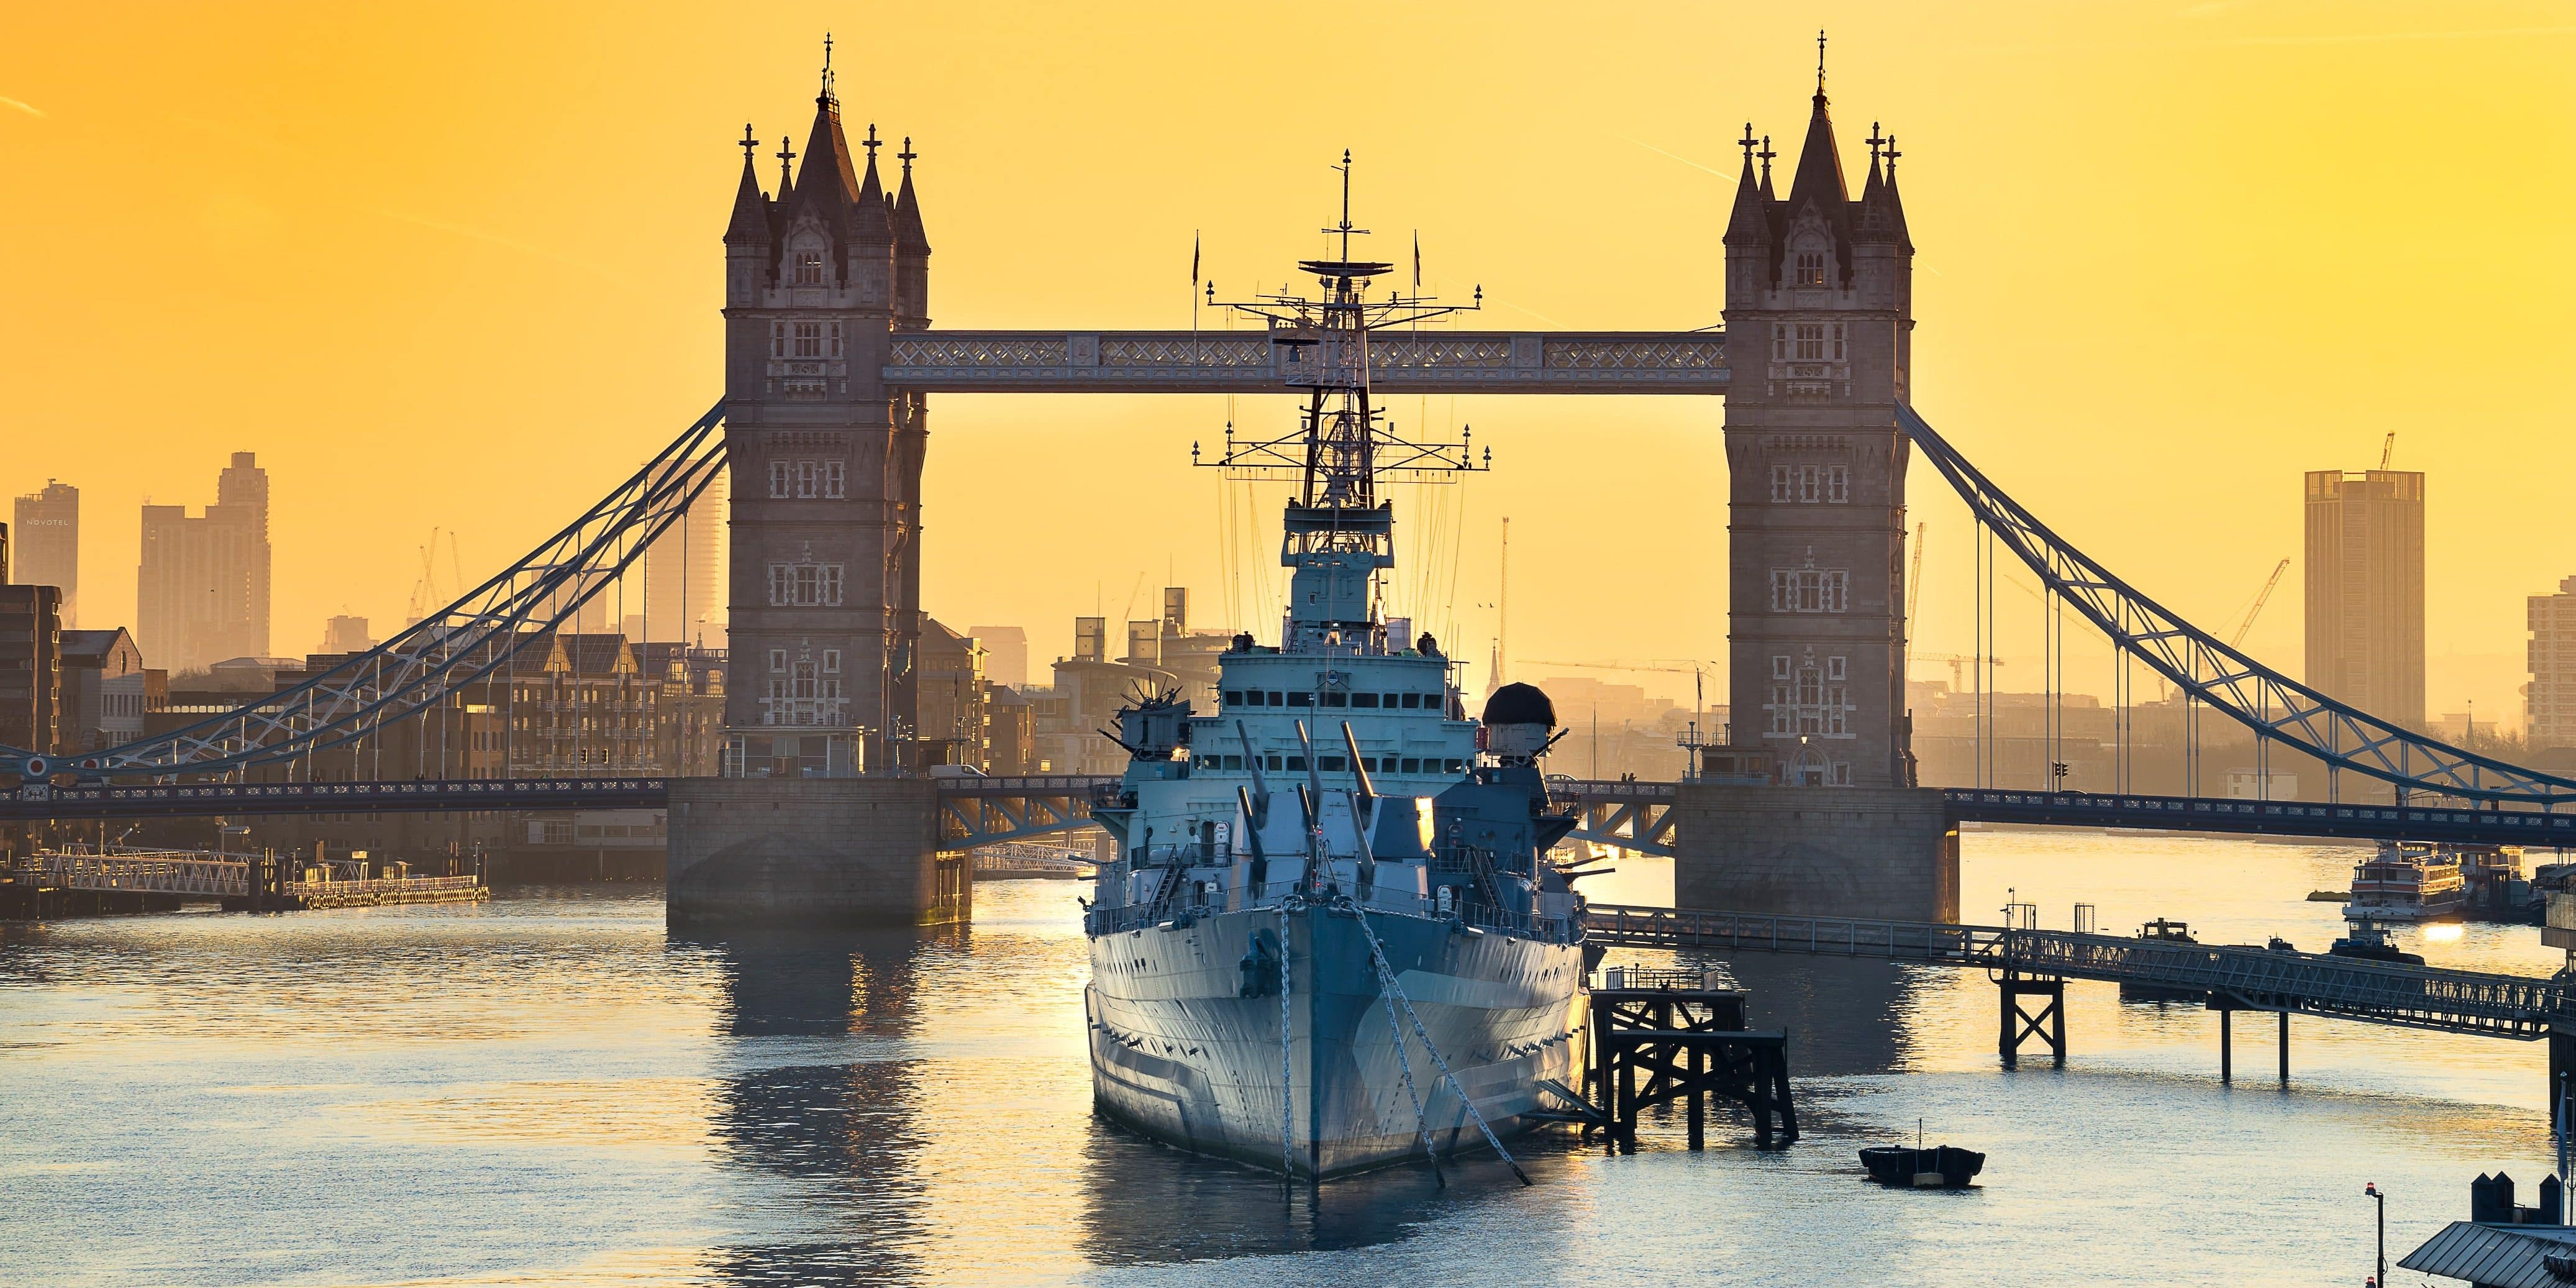 UK Royal Navy vessel on the River Thames